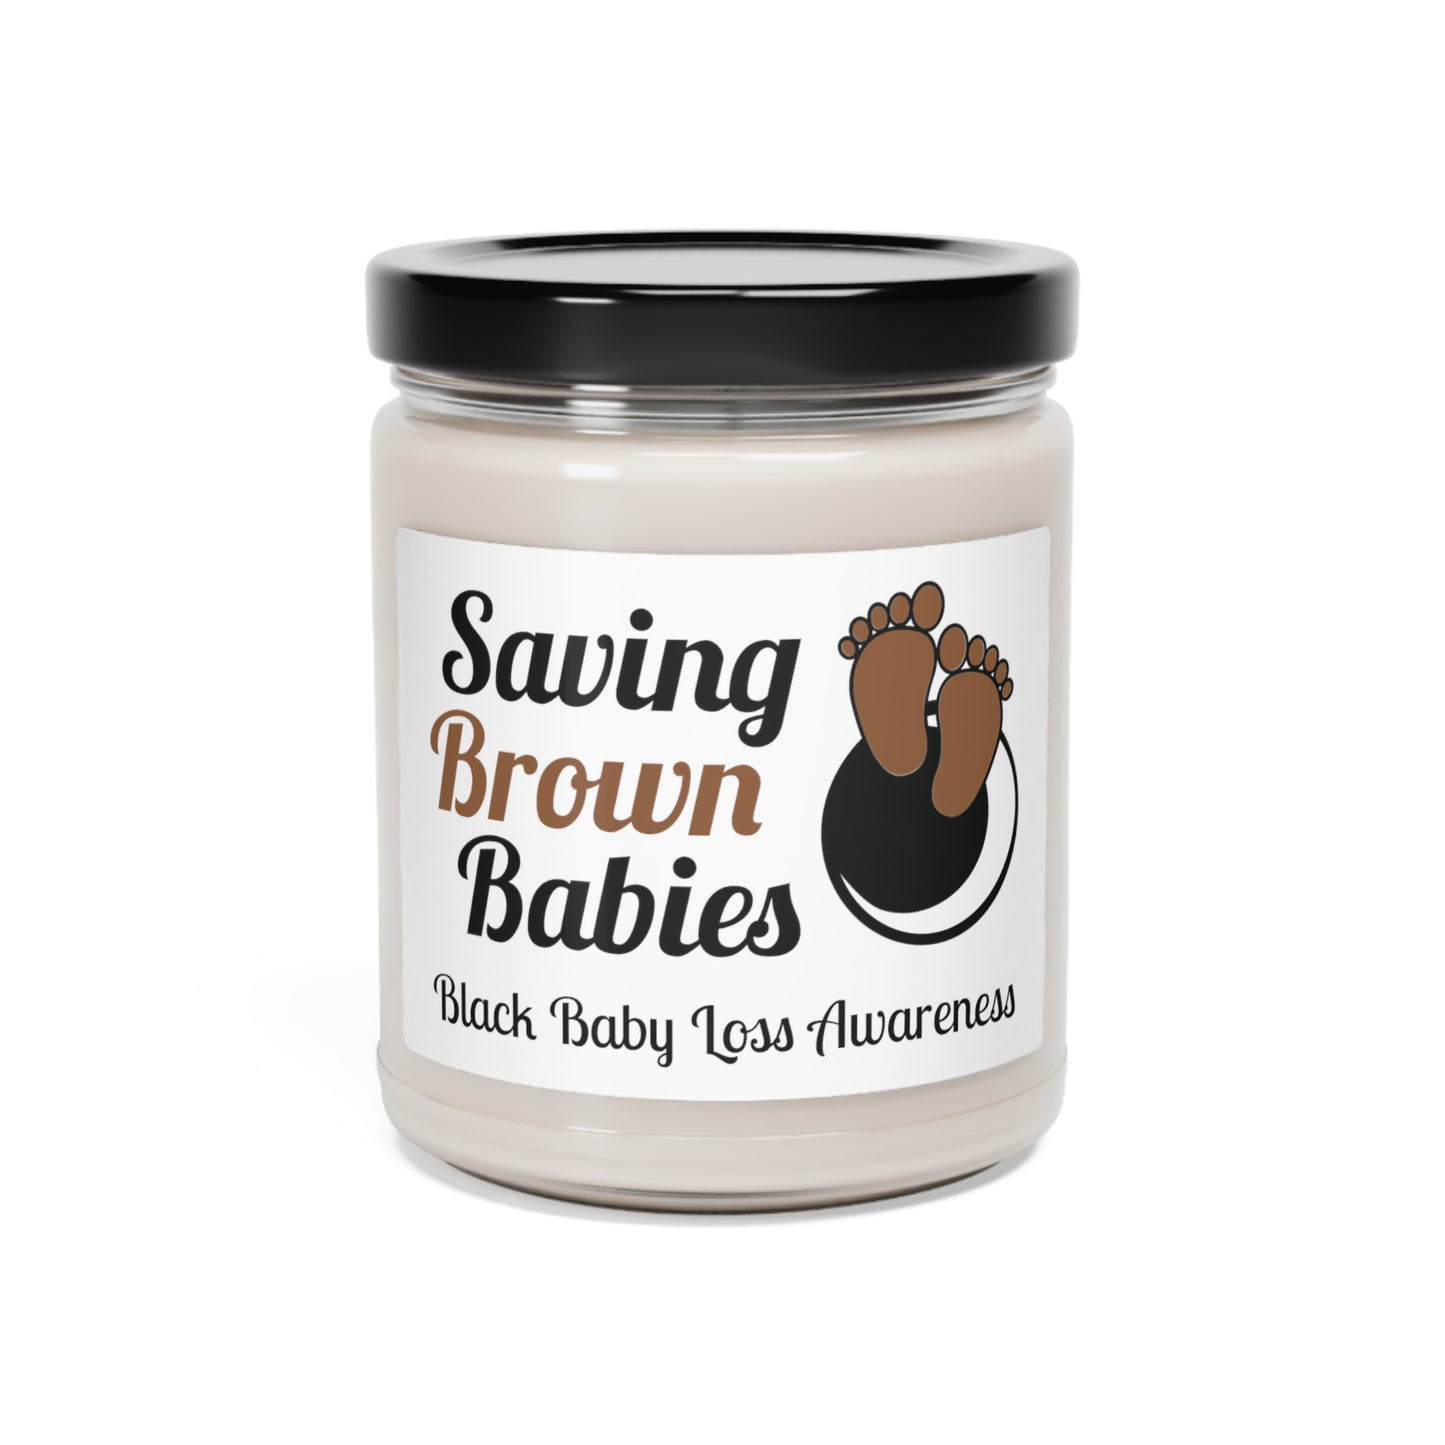 Ensemble, tranquillement unis dans la perte et sauvant les bébés bruns, bougie de soja de 9 oz pour soutenir la sensibilisation à la grossesse et à la perte du nourrisson